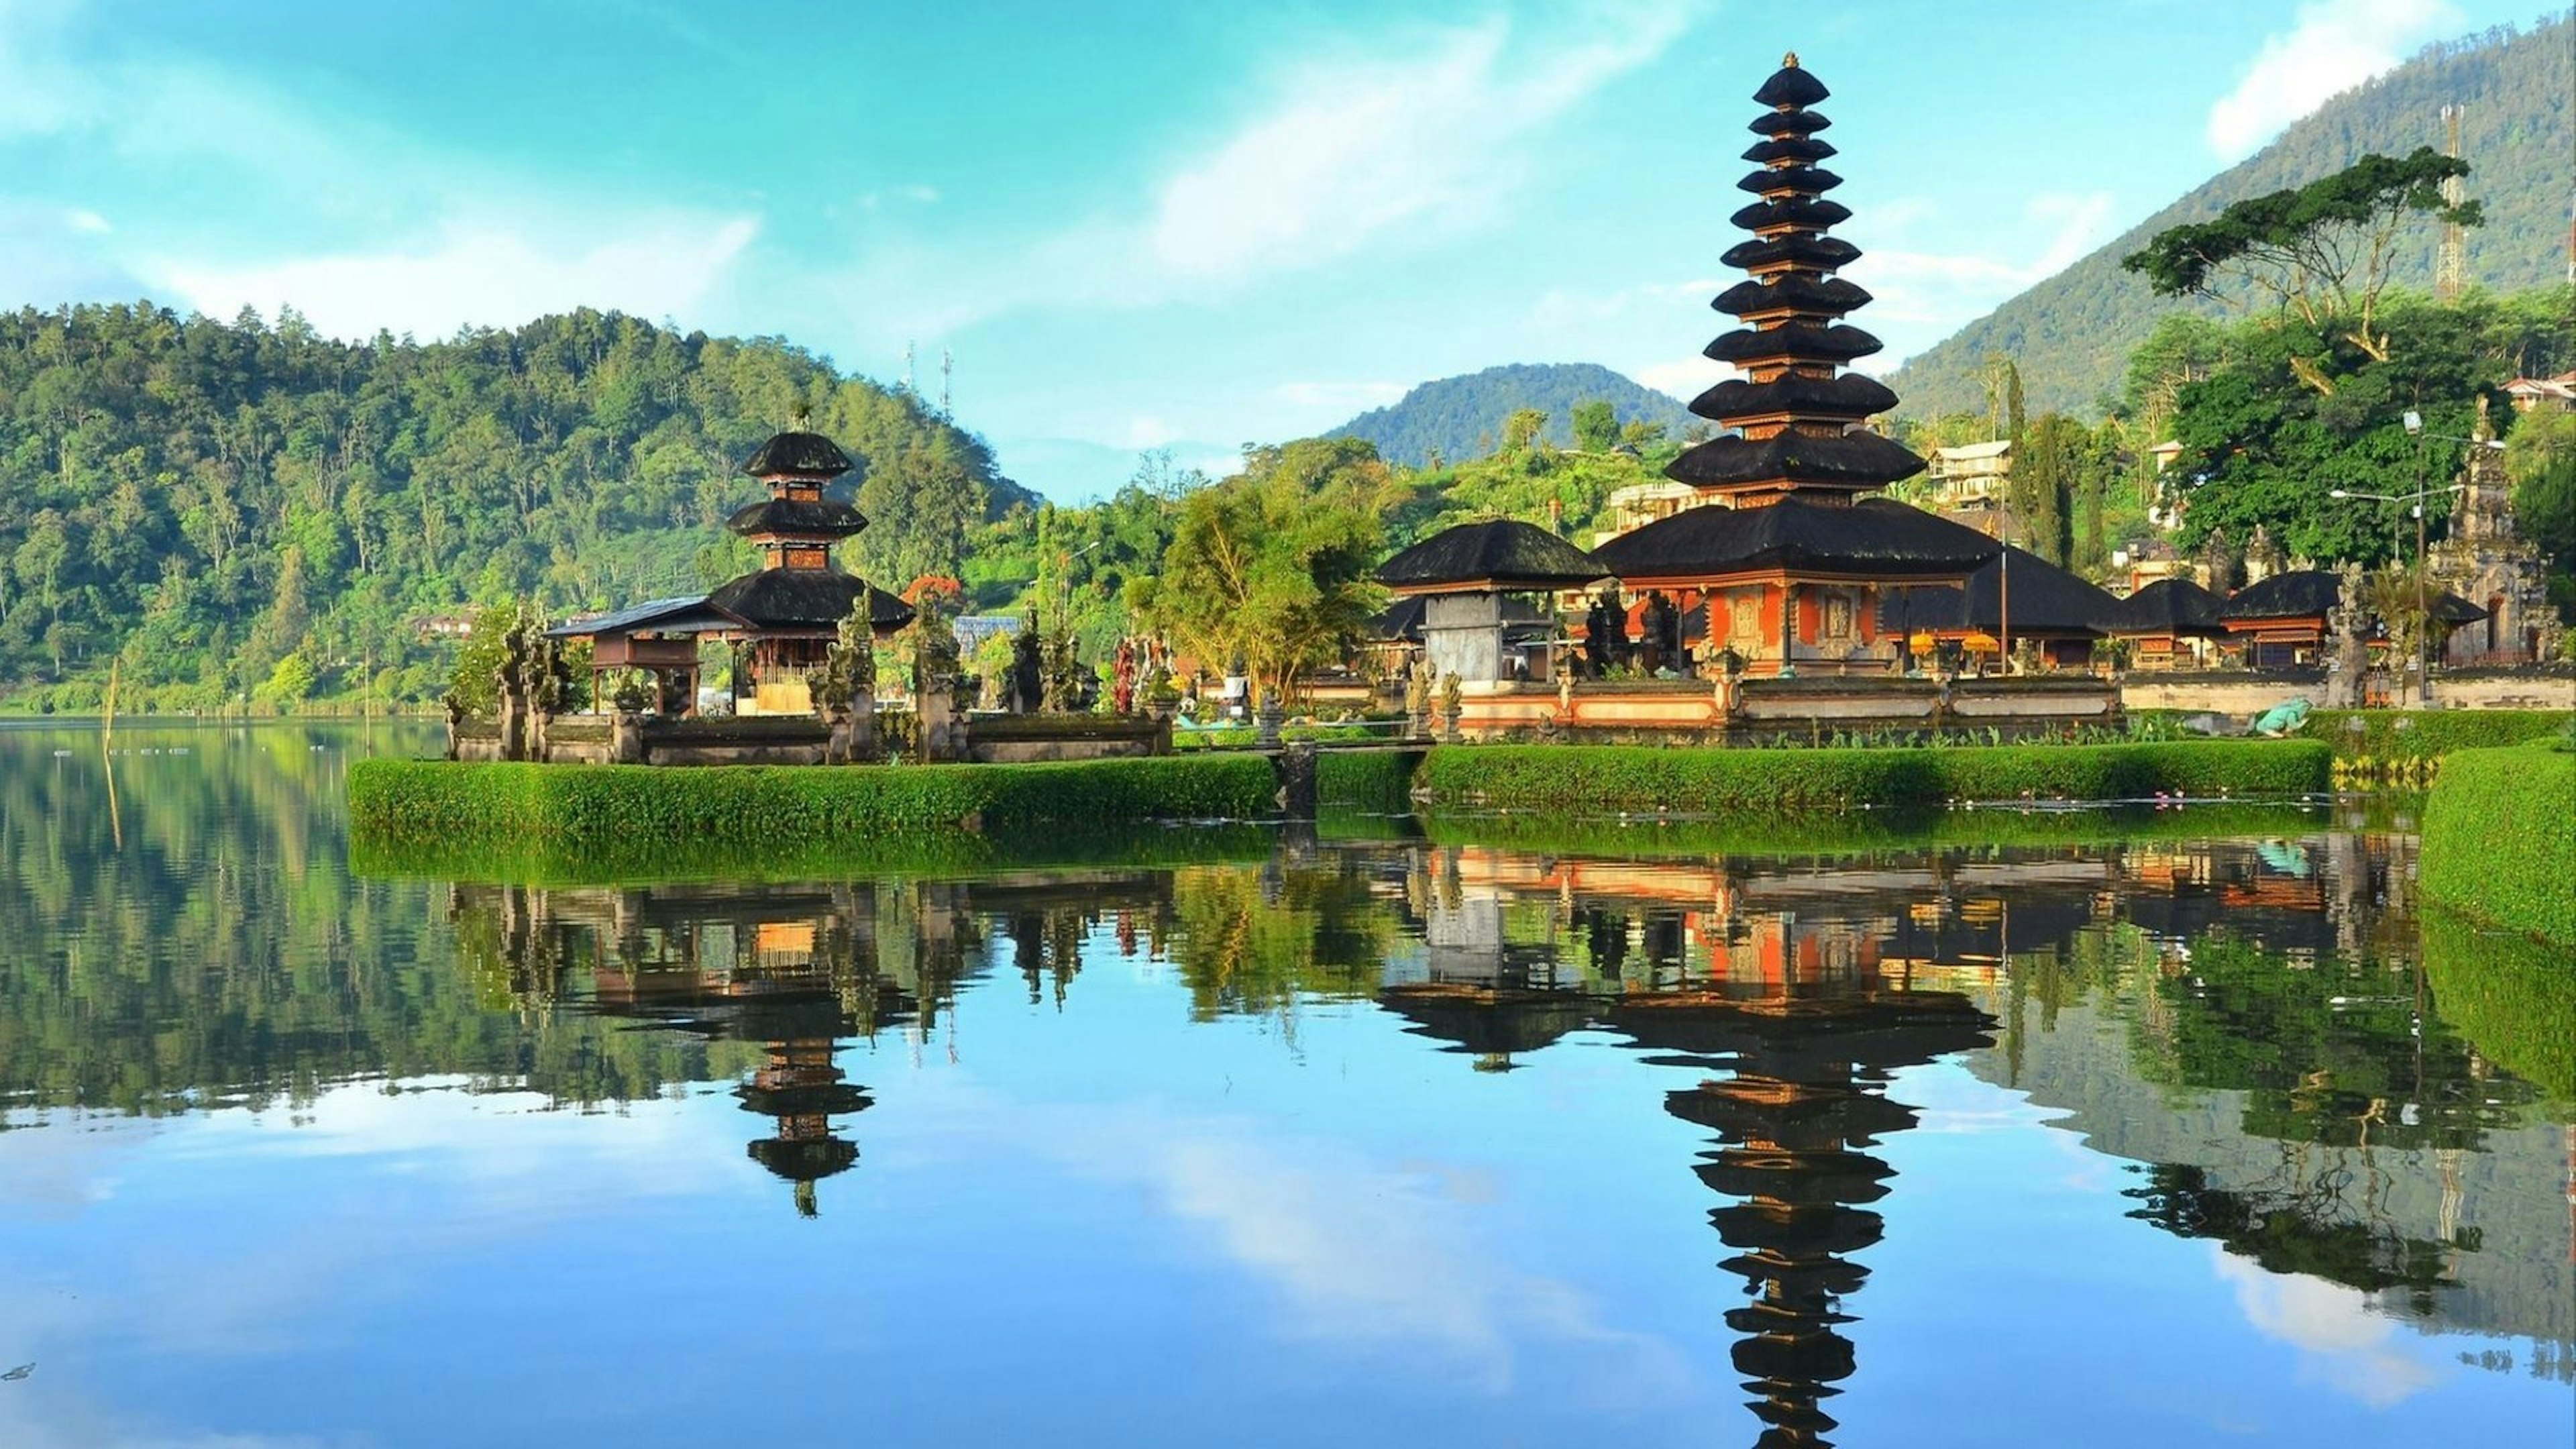 Pura Ulun Danu temple on a lake Beratan on Bali Indonesia